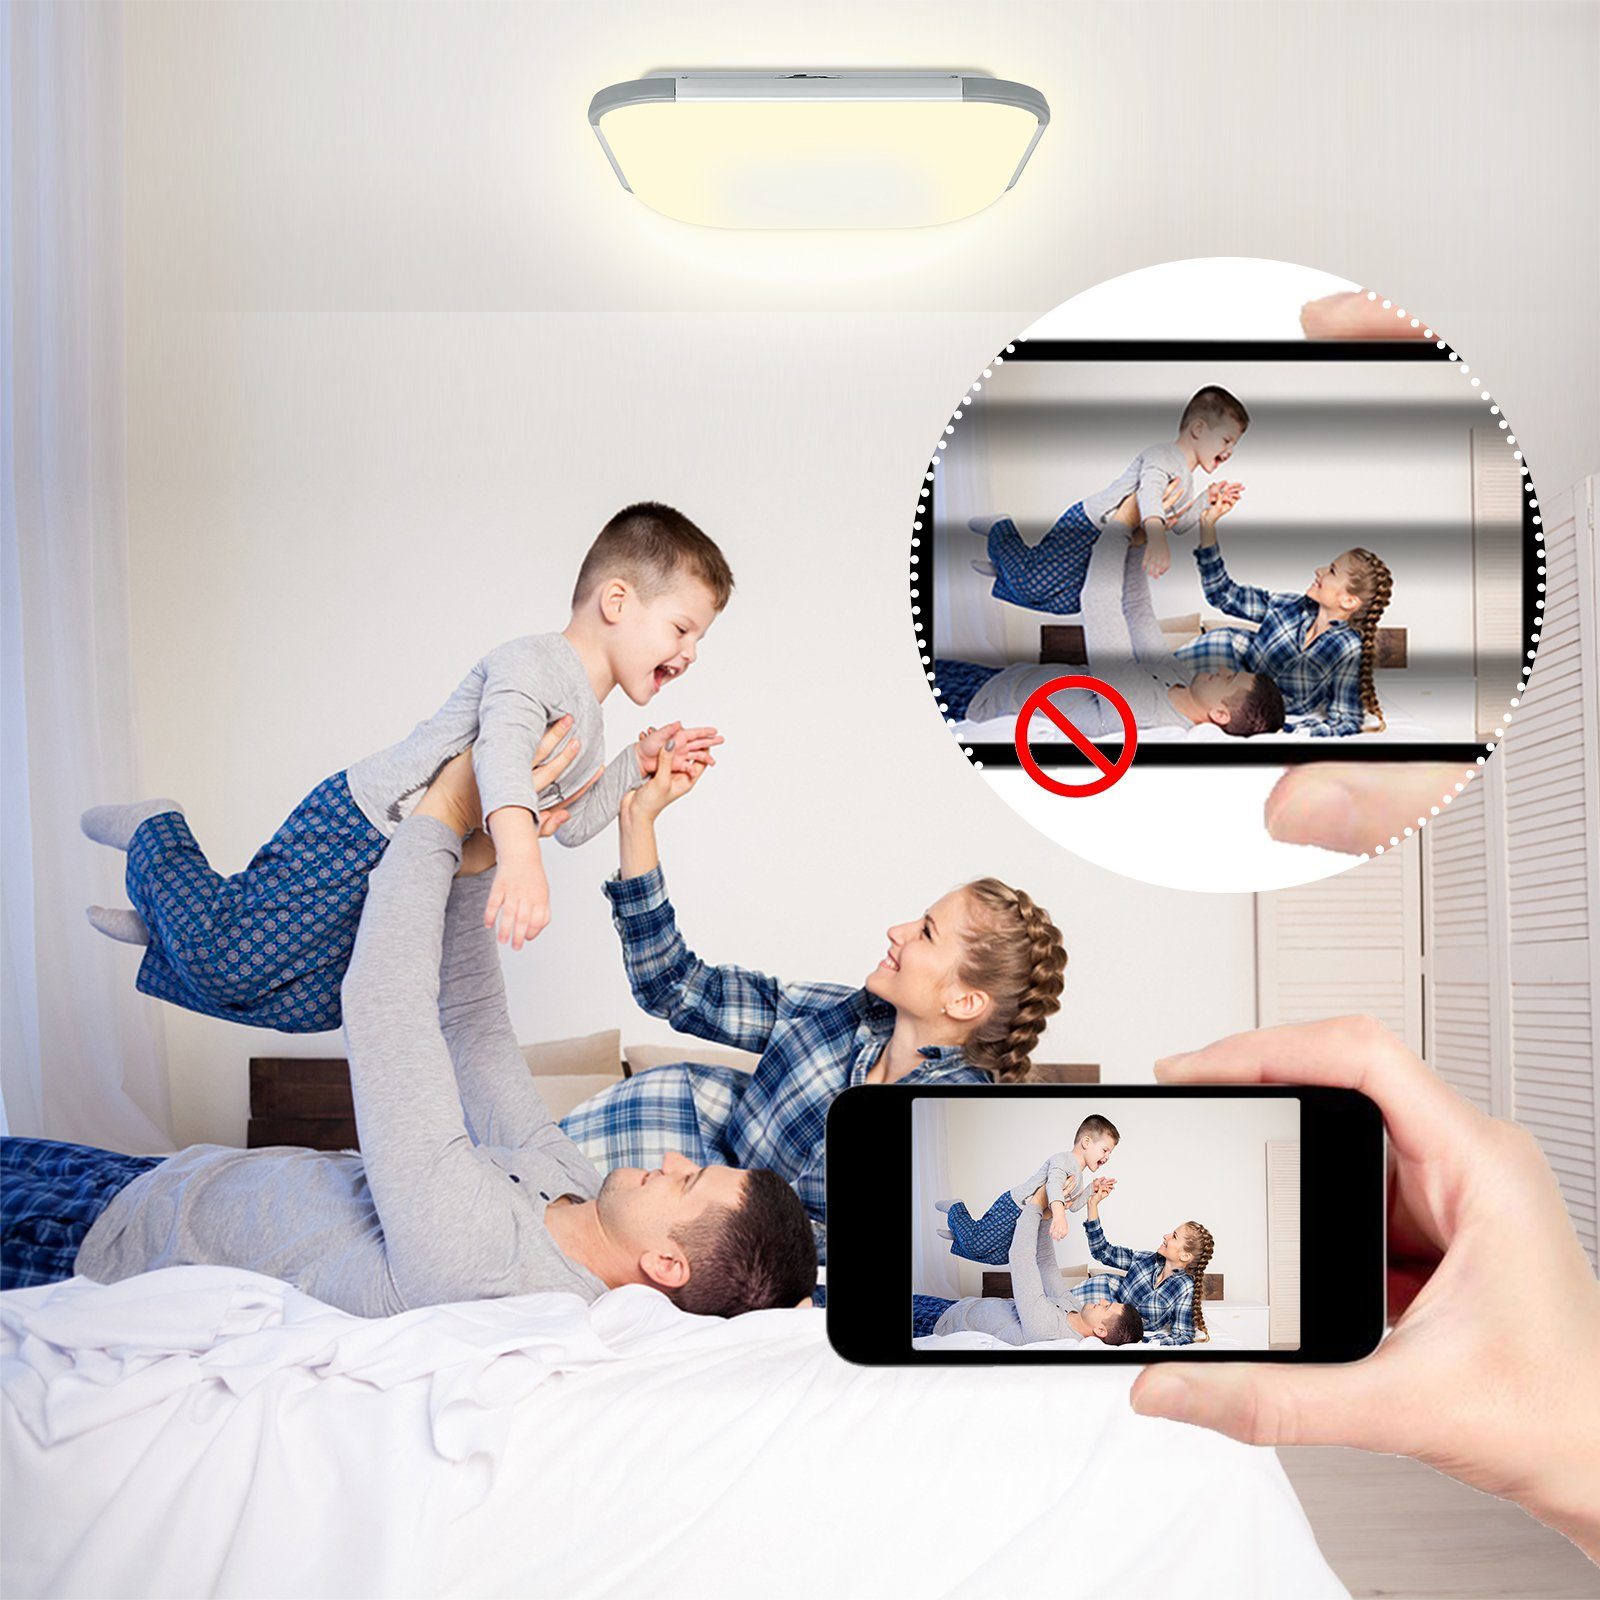 AUFUN LED Deckenleuchte IP44 Lampe 24W, Schutzart Wohnzimmer, Büro, Dimmbar/RGB/Kaltweiß/Warmweiß 24W/48W/64W/128W, für Flur, Küche, Modern